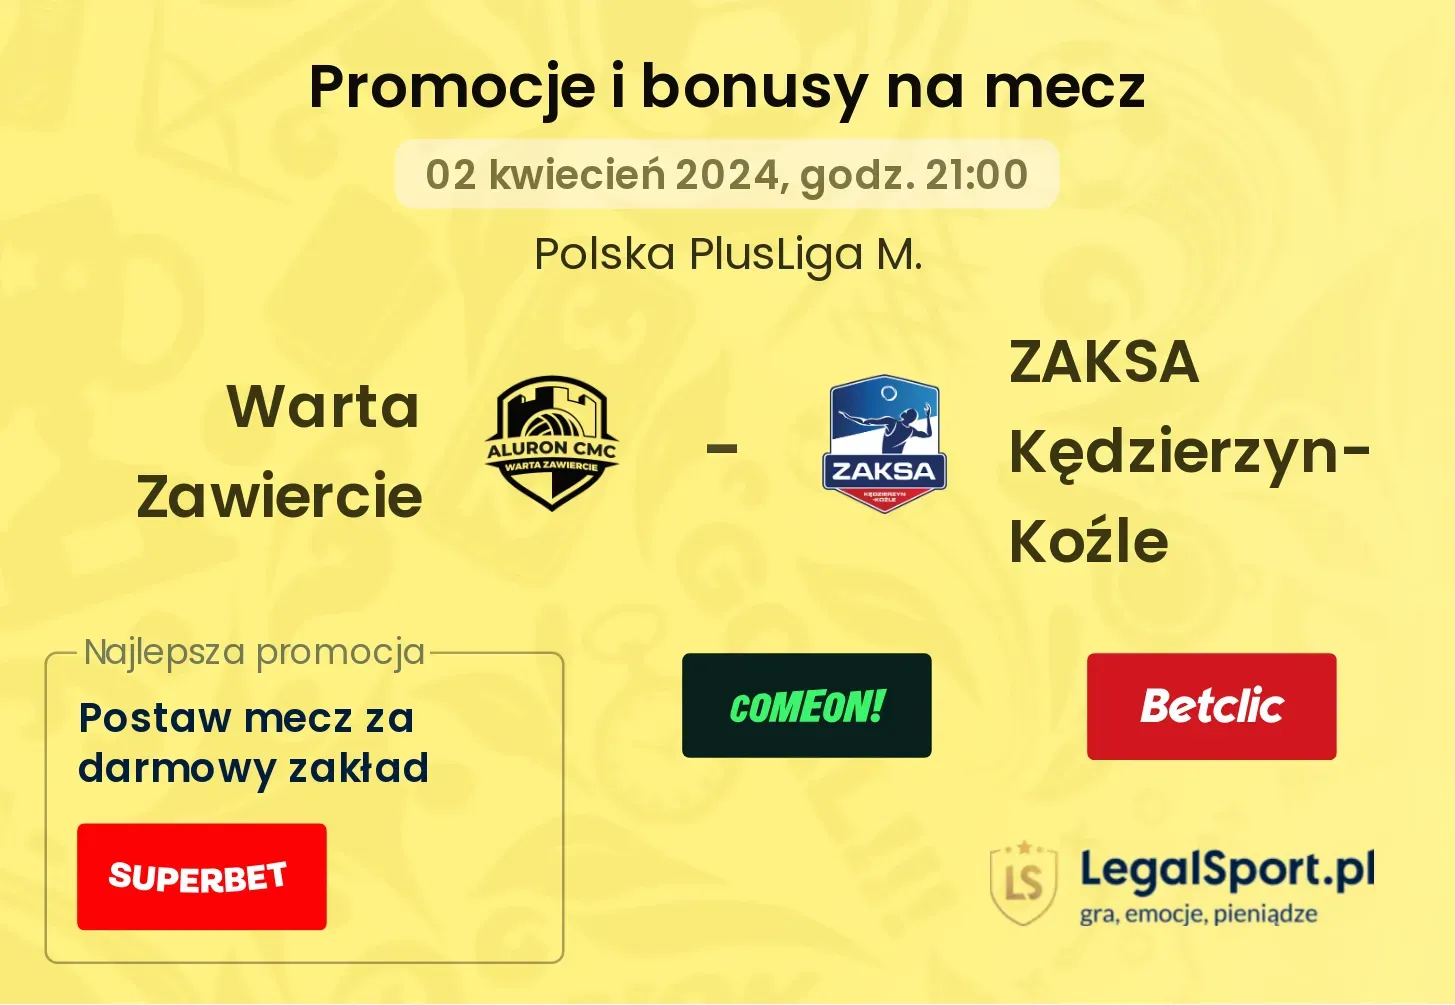 Warta Zawiercie - ZAKSA Kędzierzyn-Koźle promocje bonusy na mecz